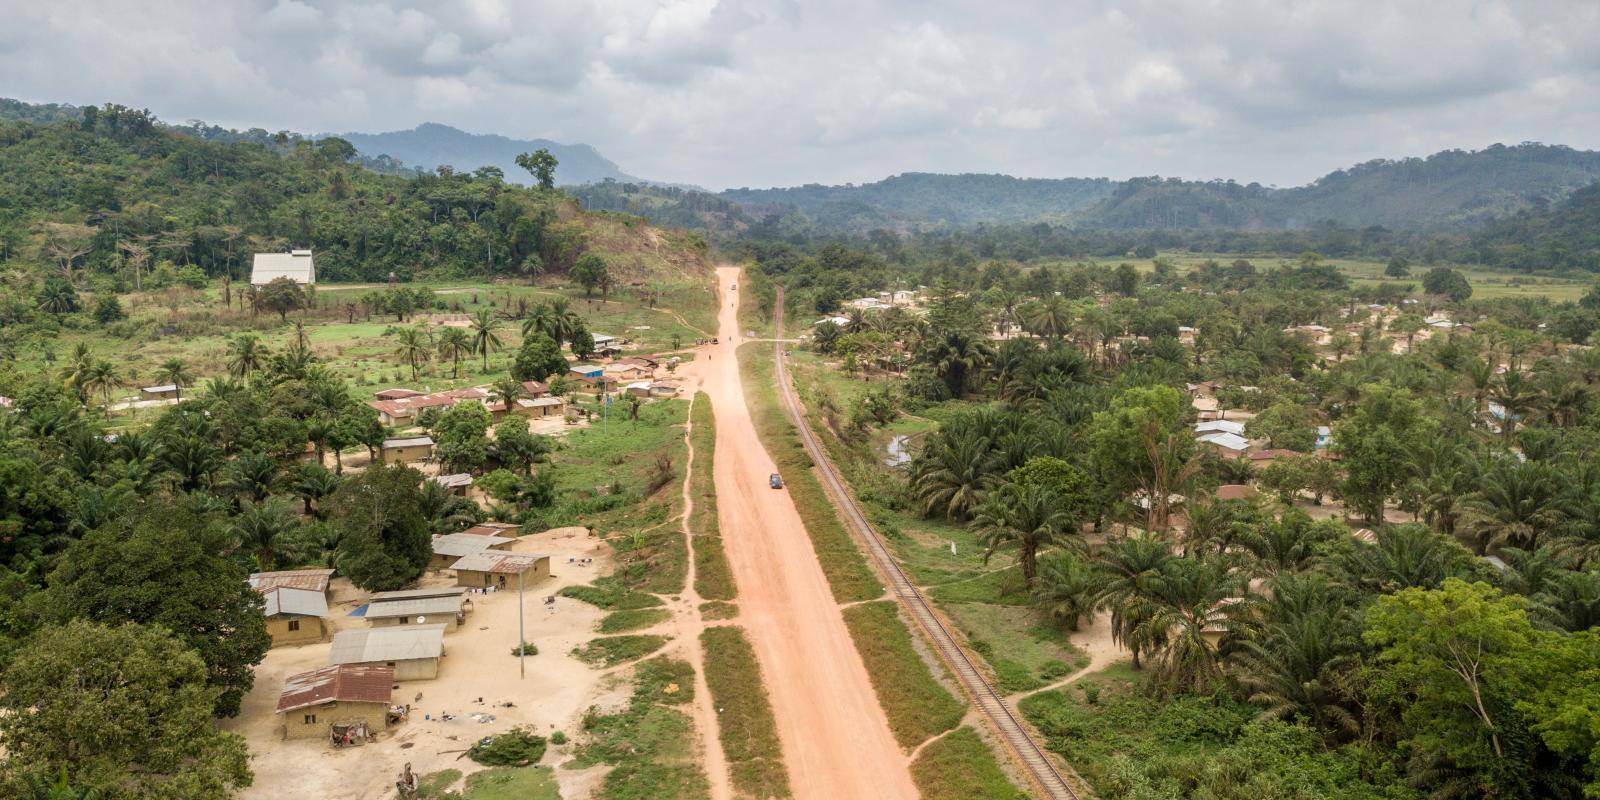 Road through Liberian town.